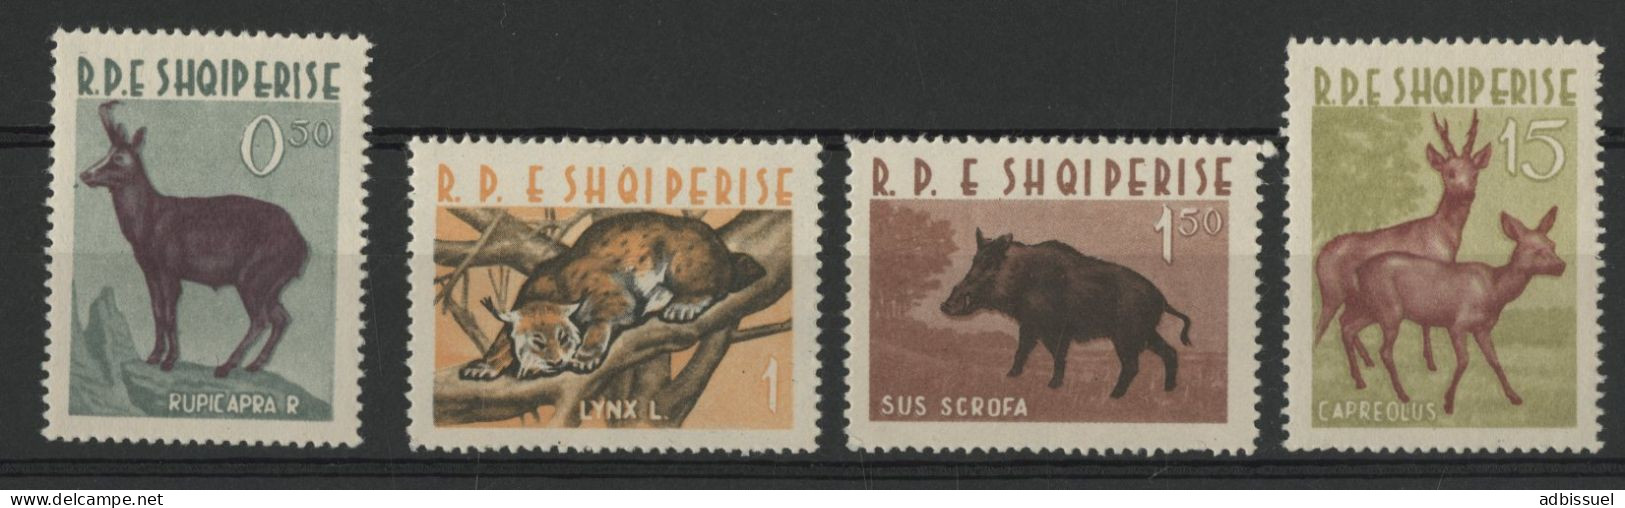 1962 ALBANIE N° 597 à 600 Cote 35 € Neufs ** (MNH) ANIMAUX ANIMALS TB Aucun Defaut. - Albanien